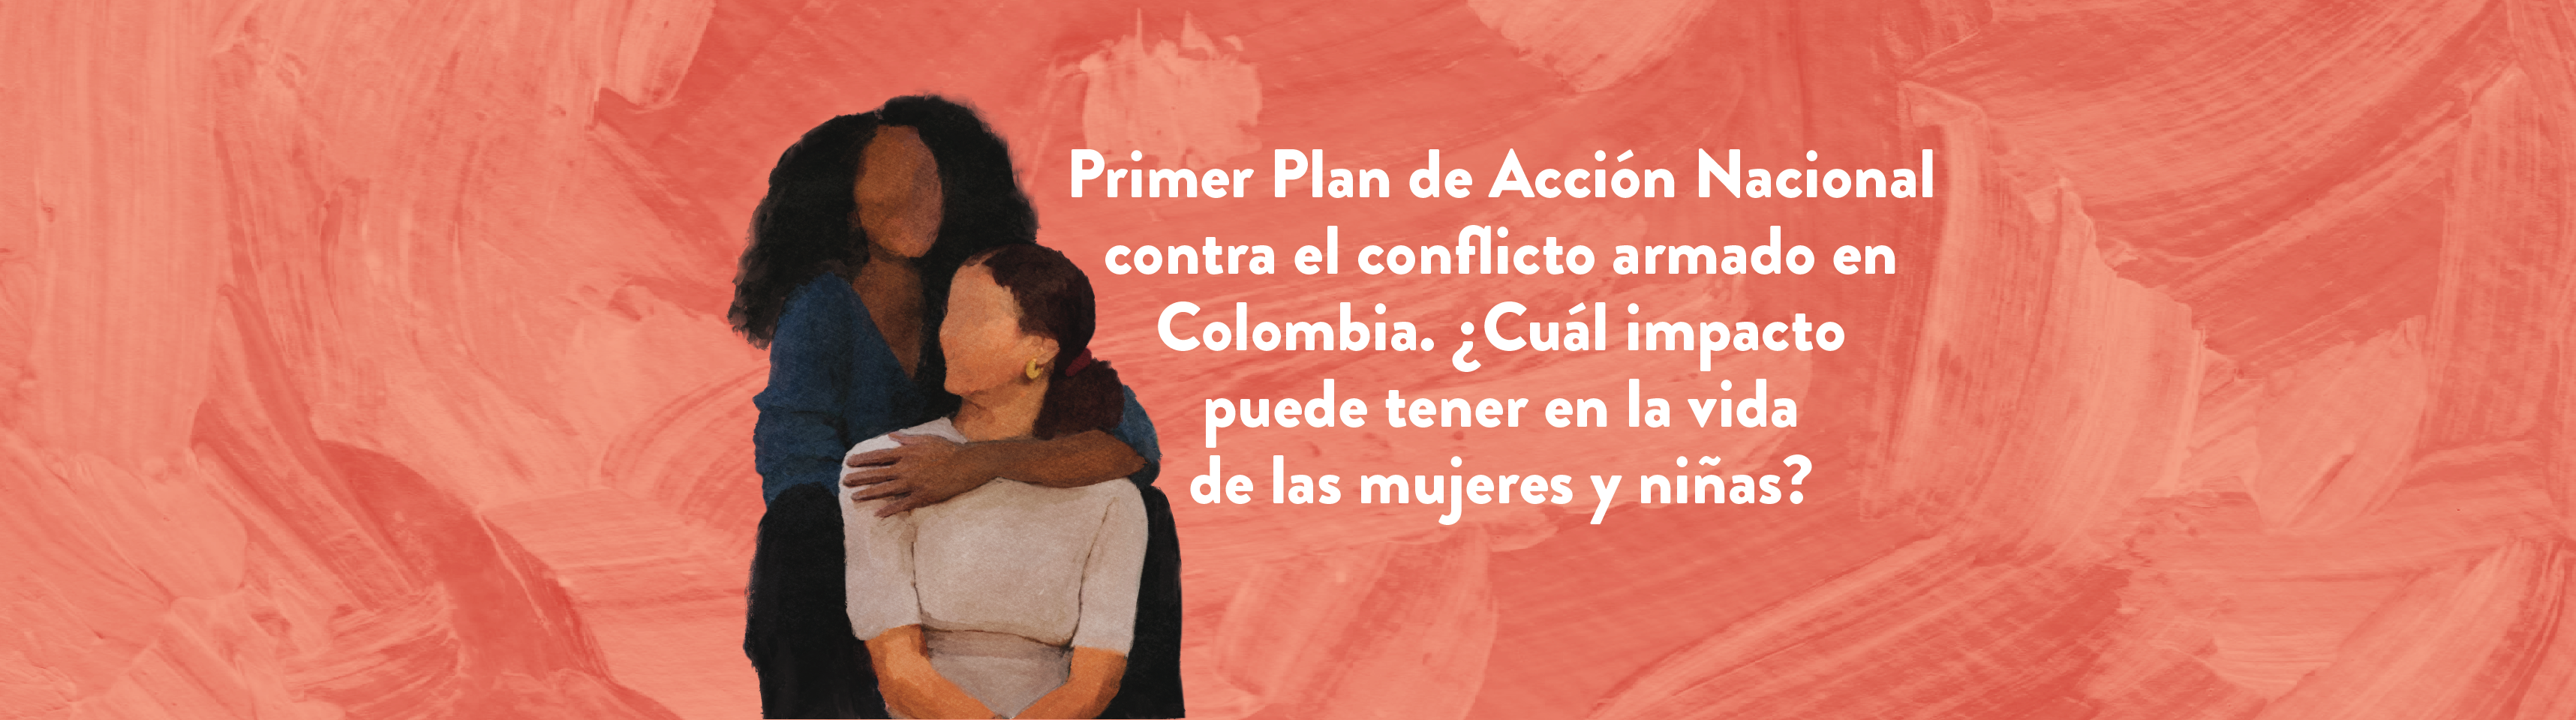 Primer Plan de Acción Nacional contra el conflicto armado en Colombia. ¿Cuál impacto puede tener en la vida de las mujeres y niñas?   